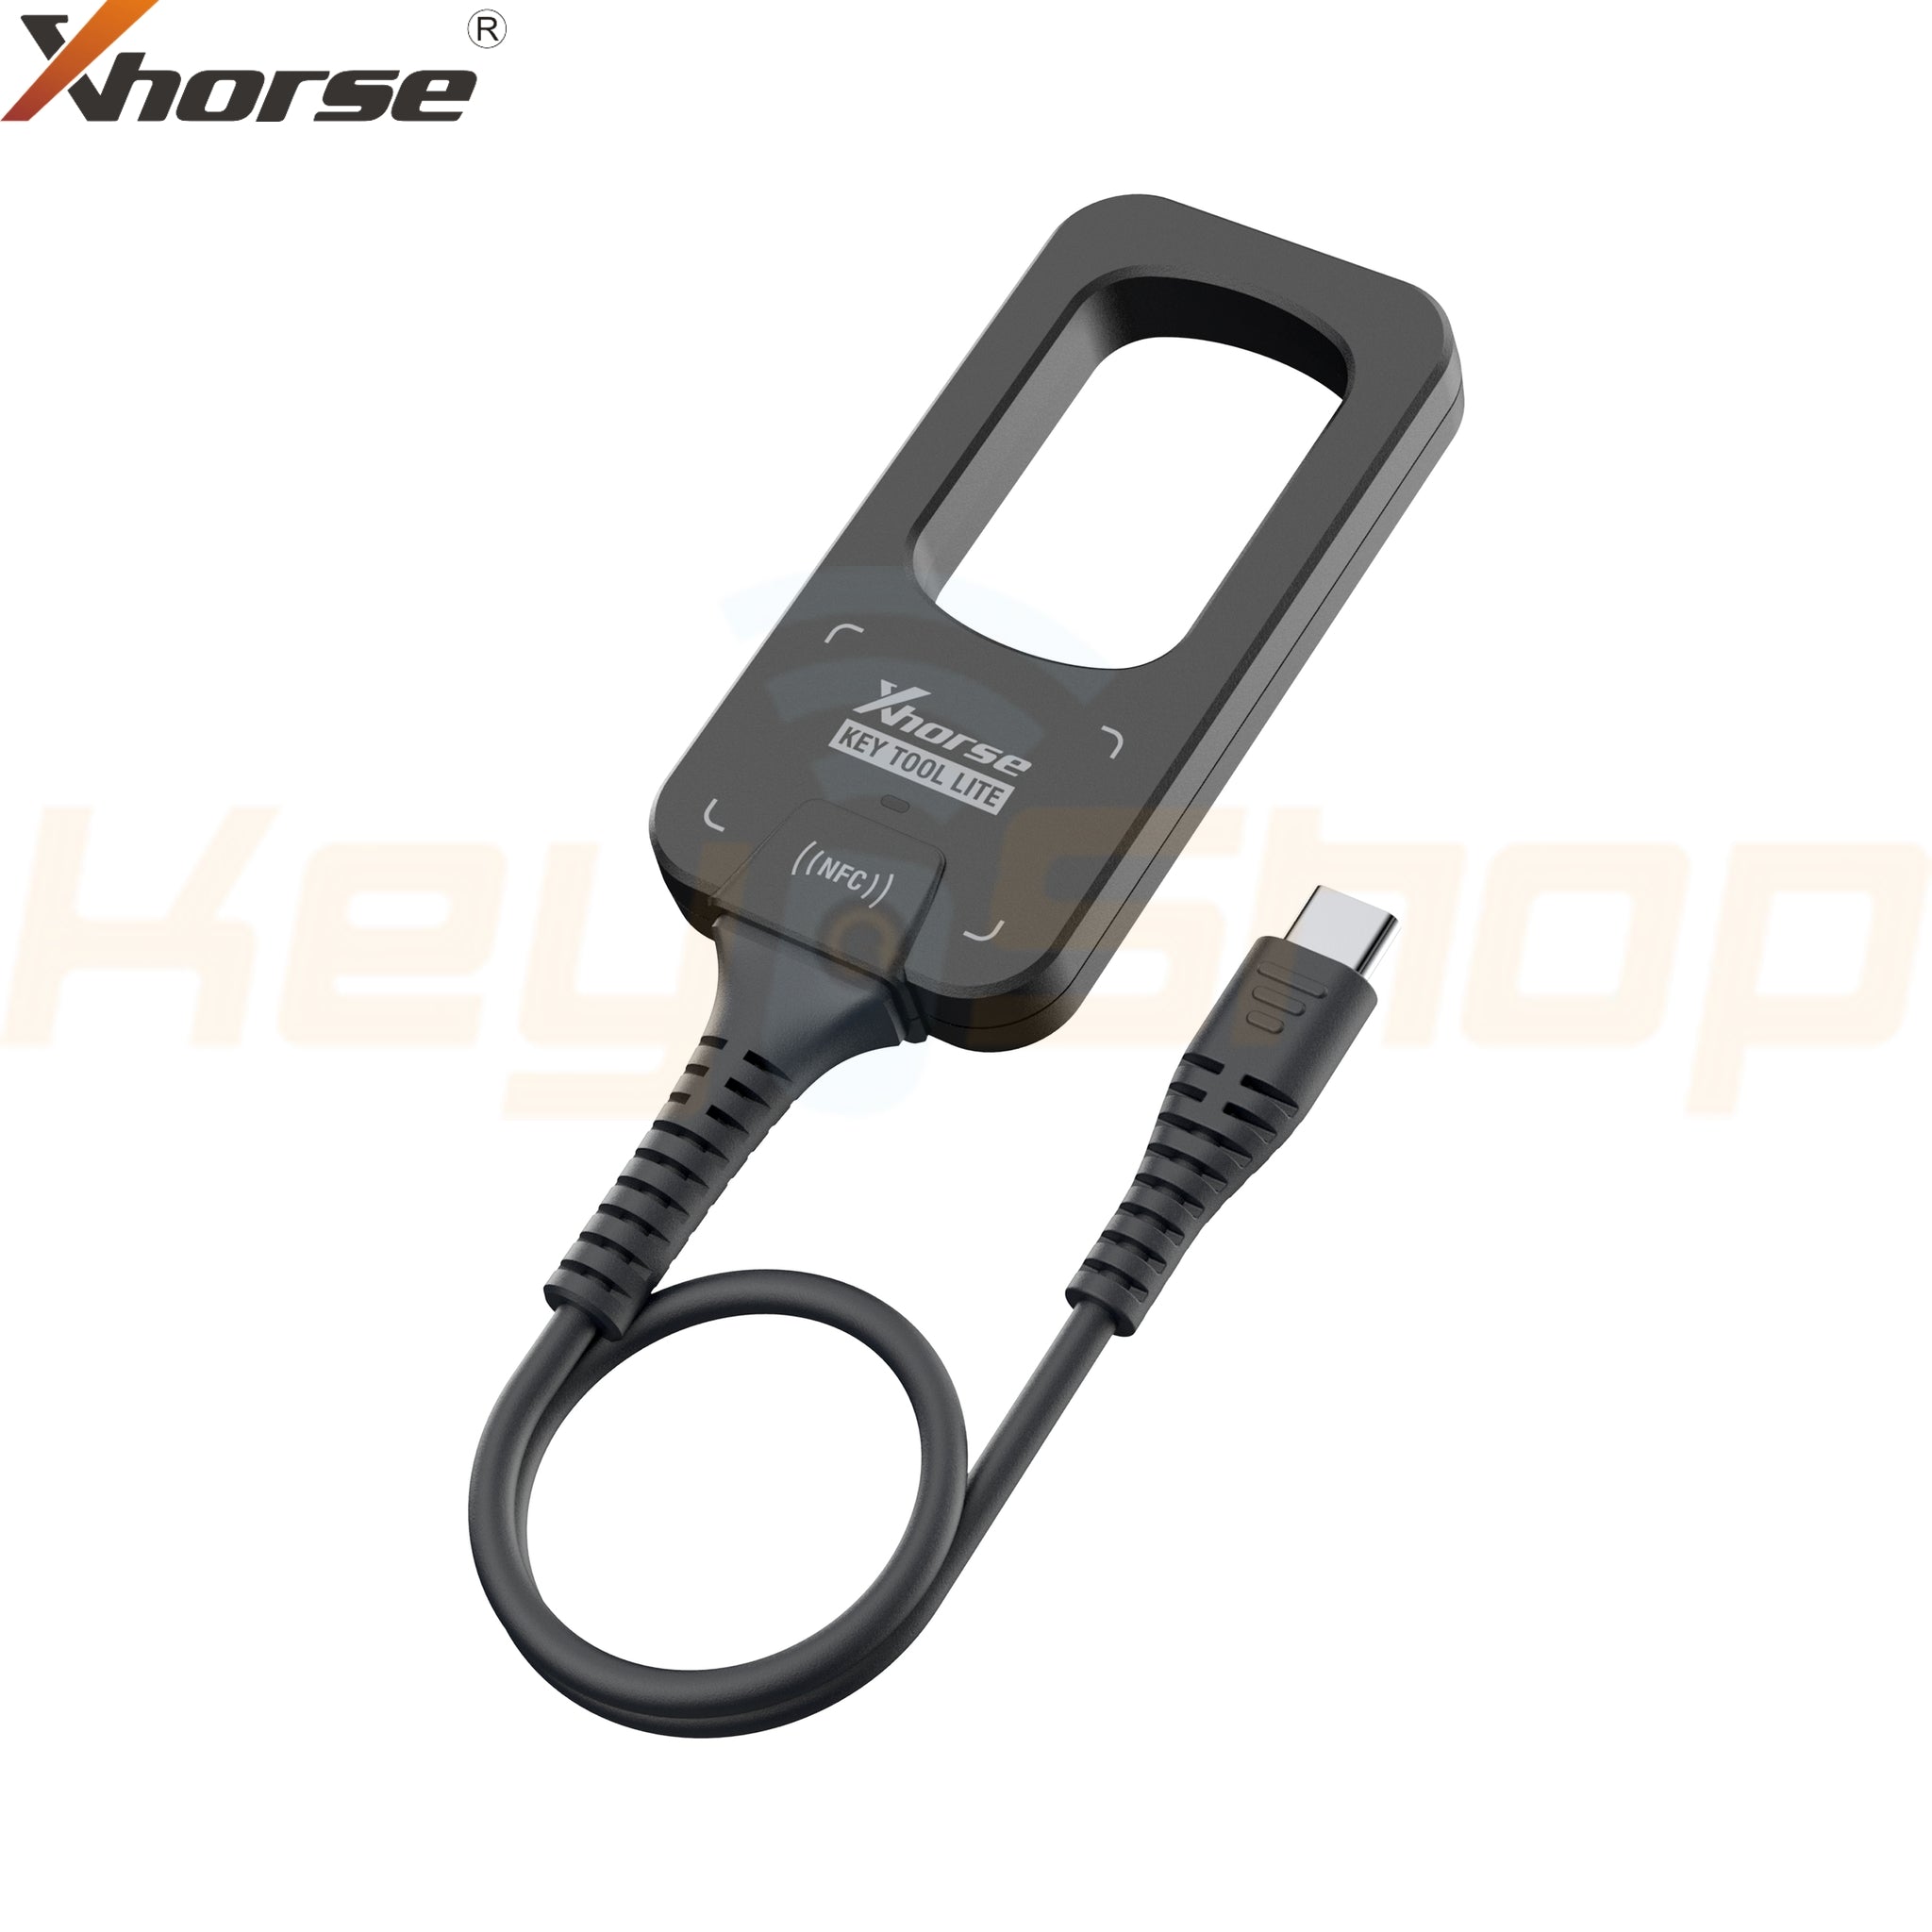 מכשיר קידוד- Xhorse VVDI Bee Key Tool- Lite קיטול לייט(XDKML0)